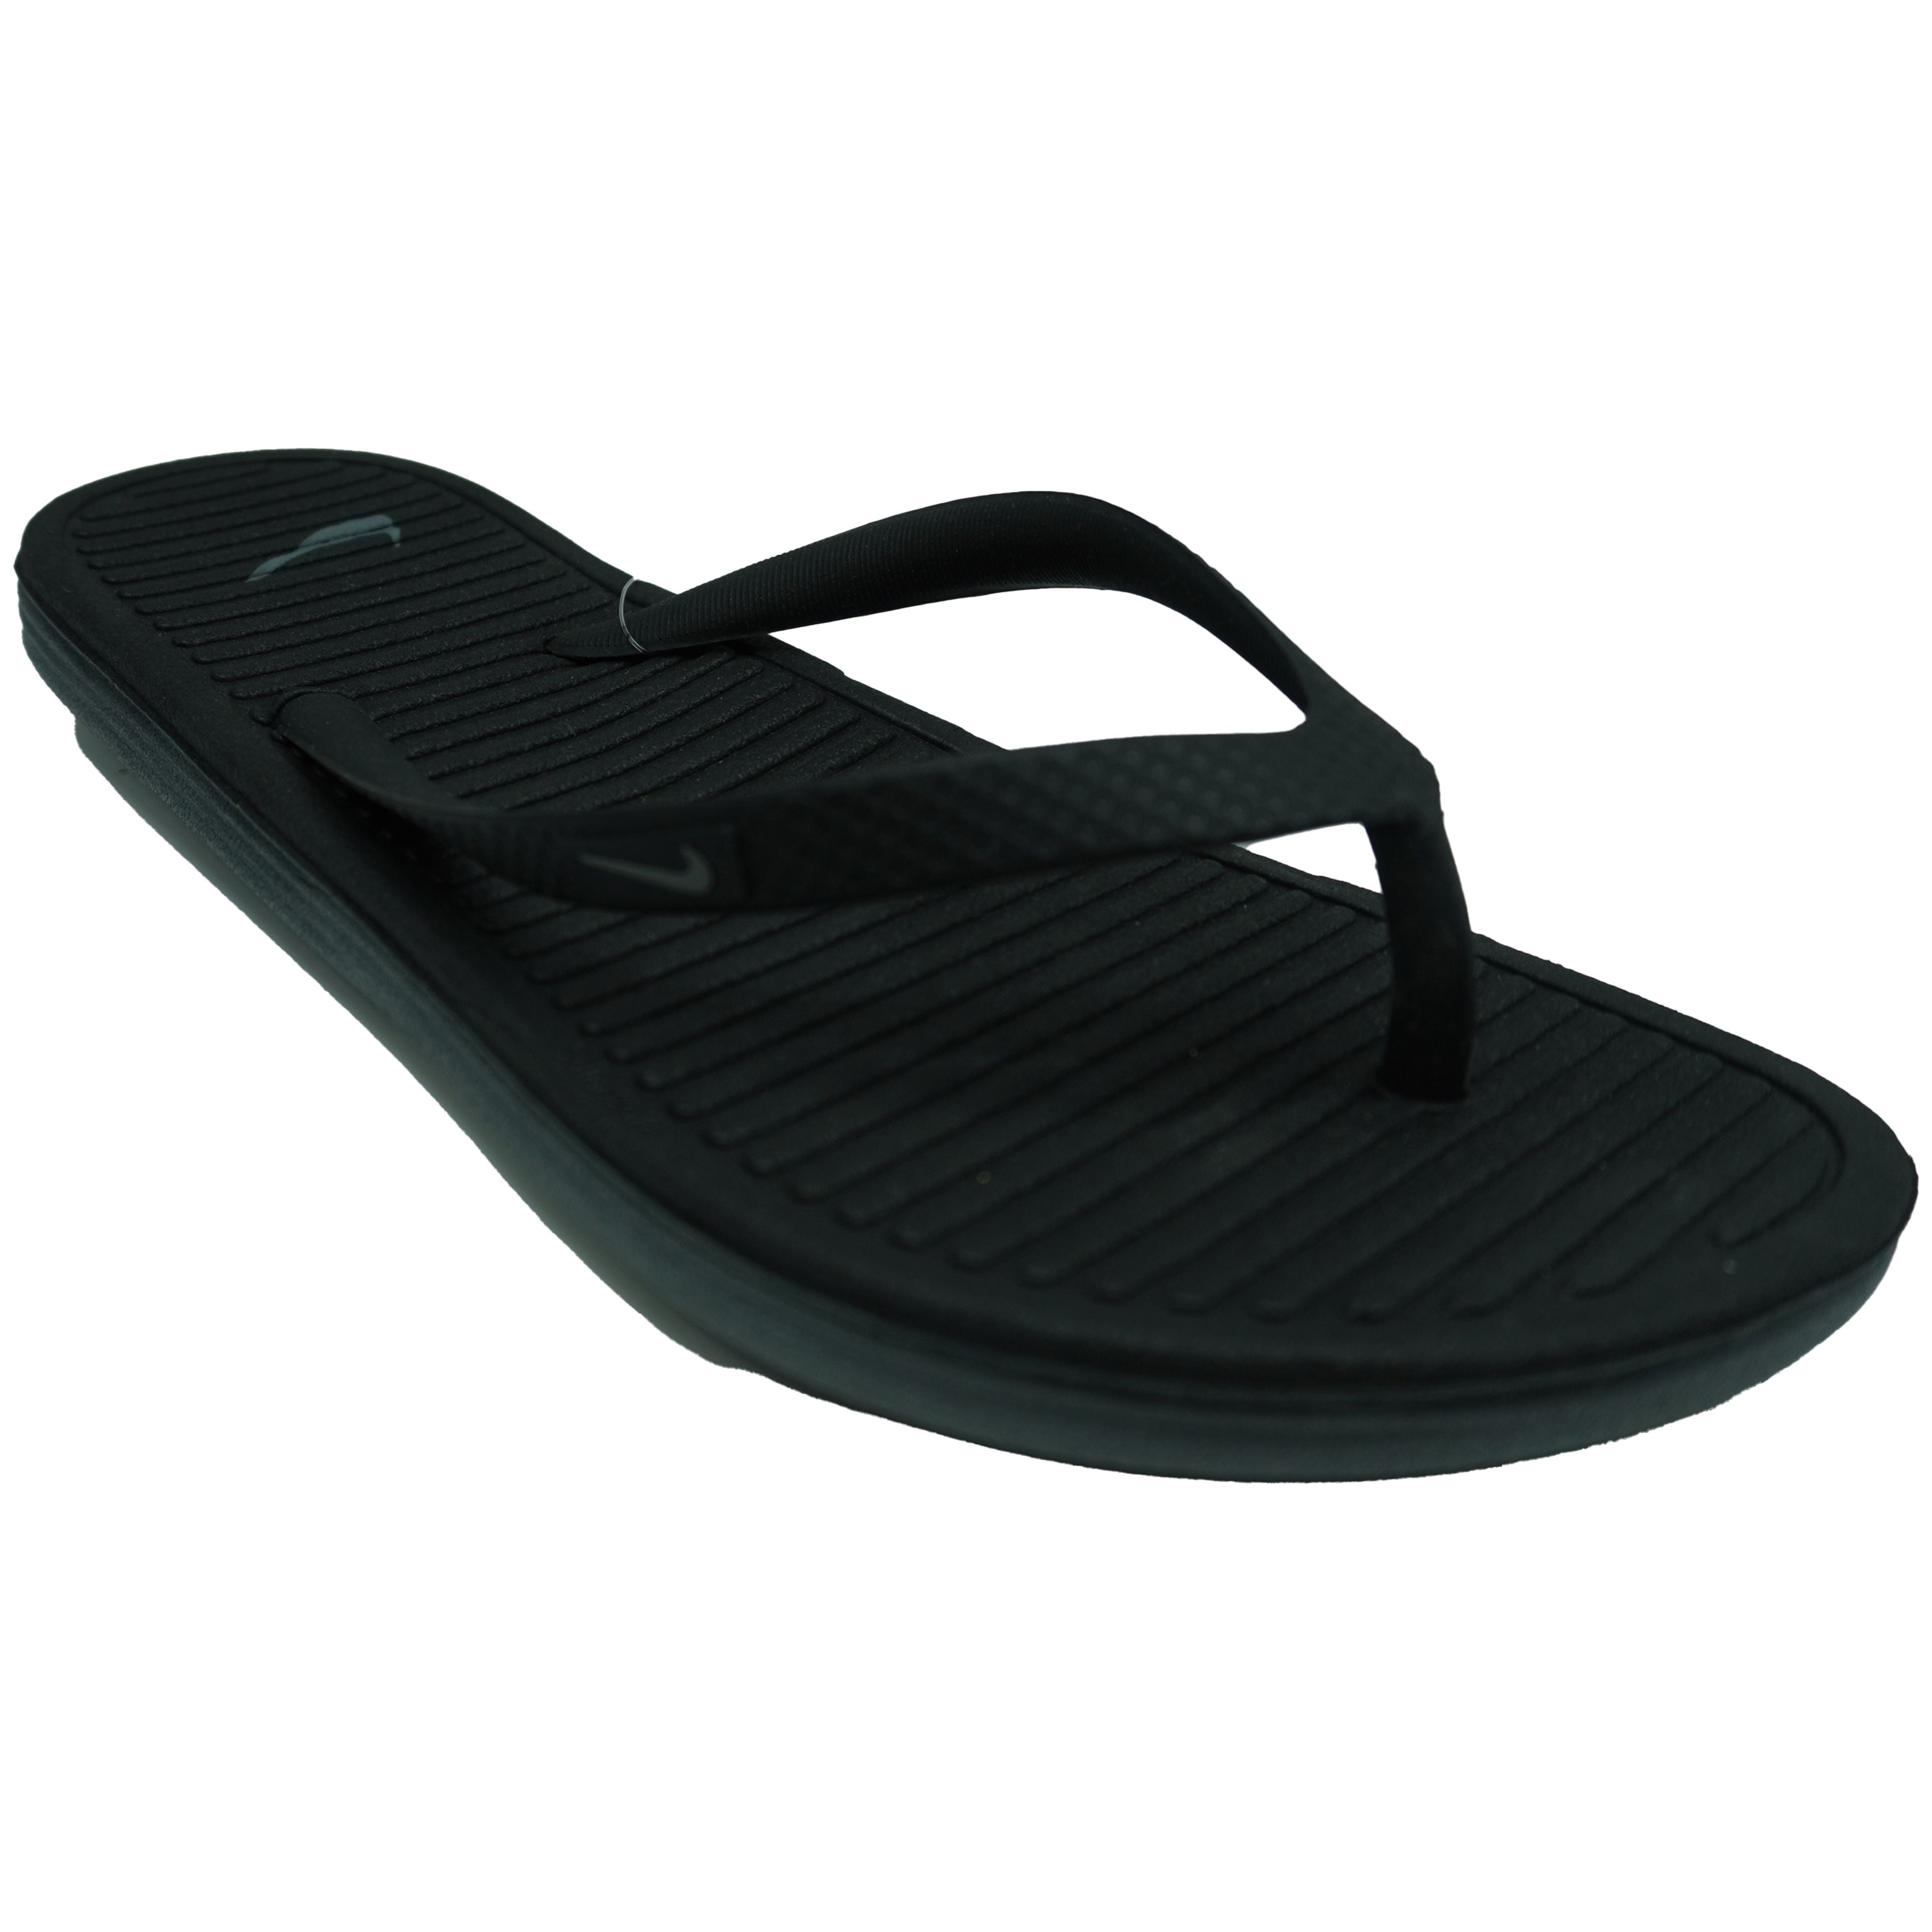 Women's Solarsoft II Sandals Black 5 - Walmart.com